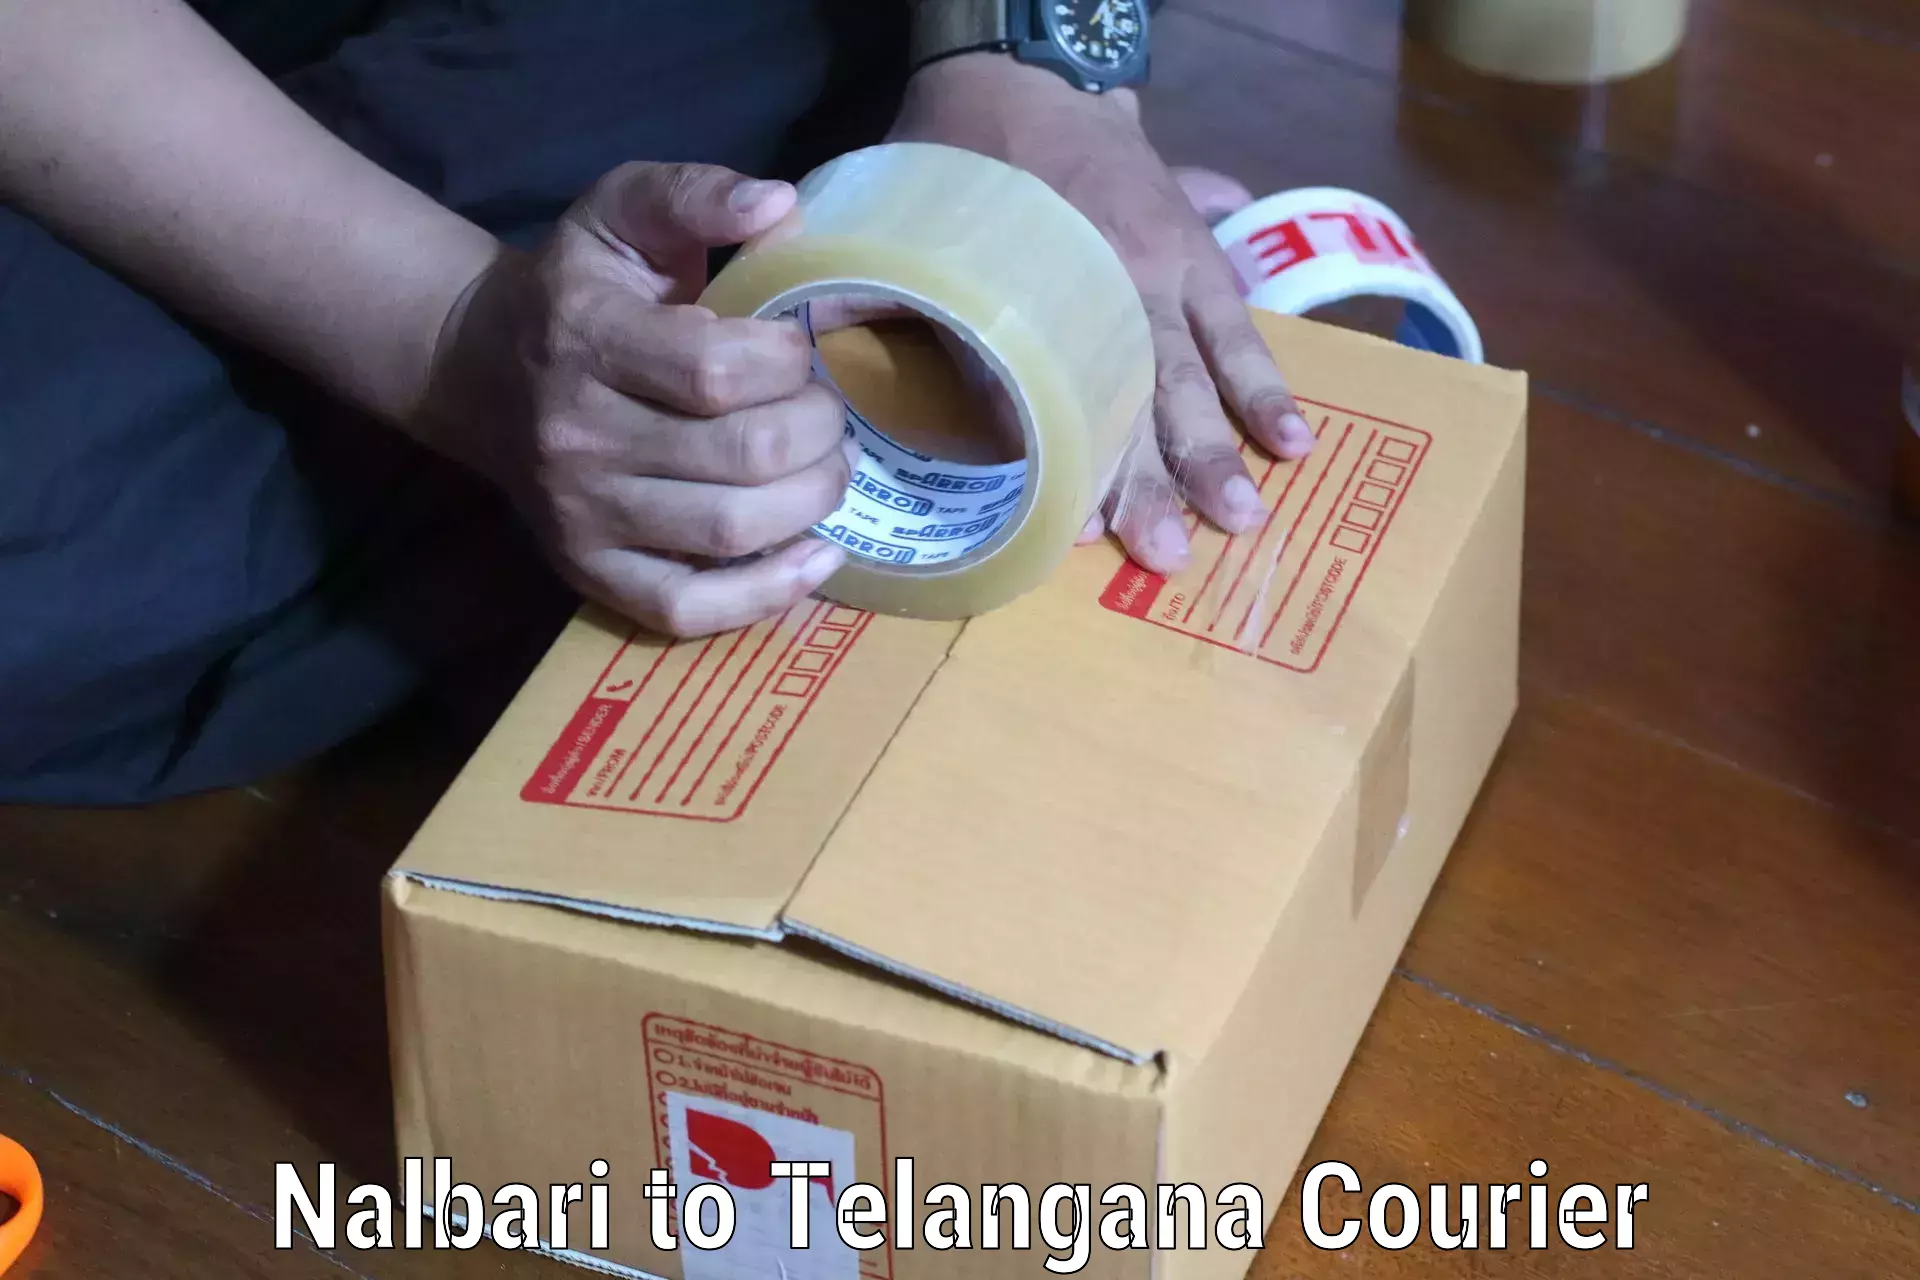 24/7 courier service Nalbari to Telangana